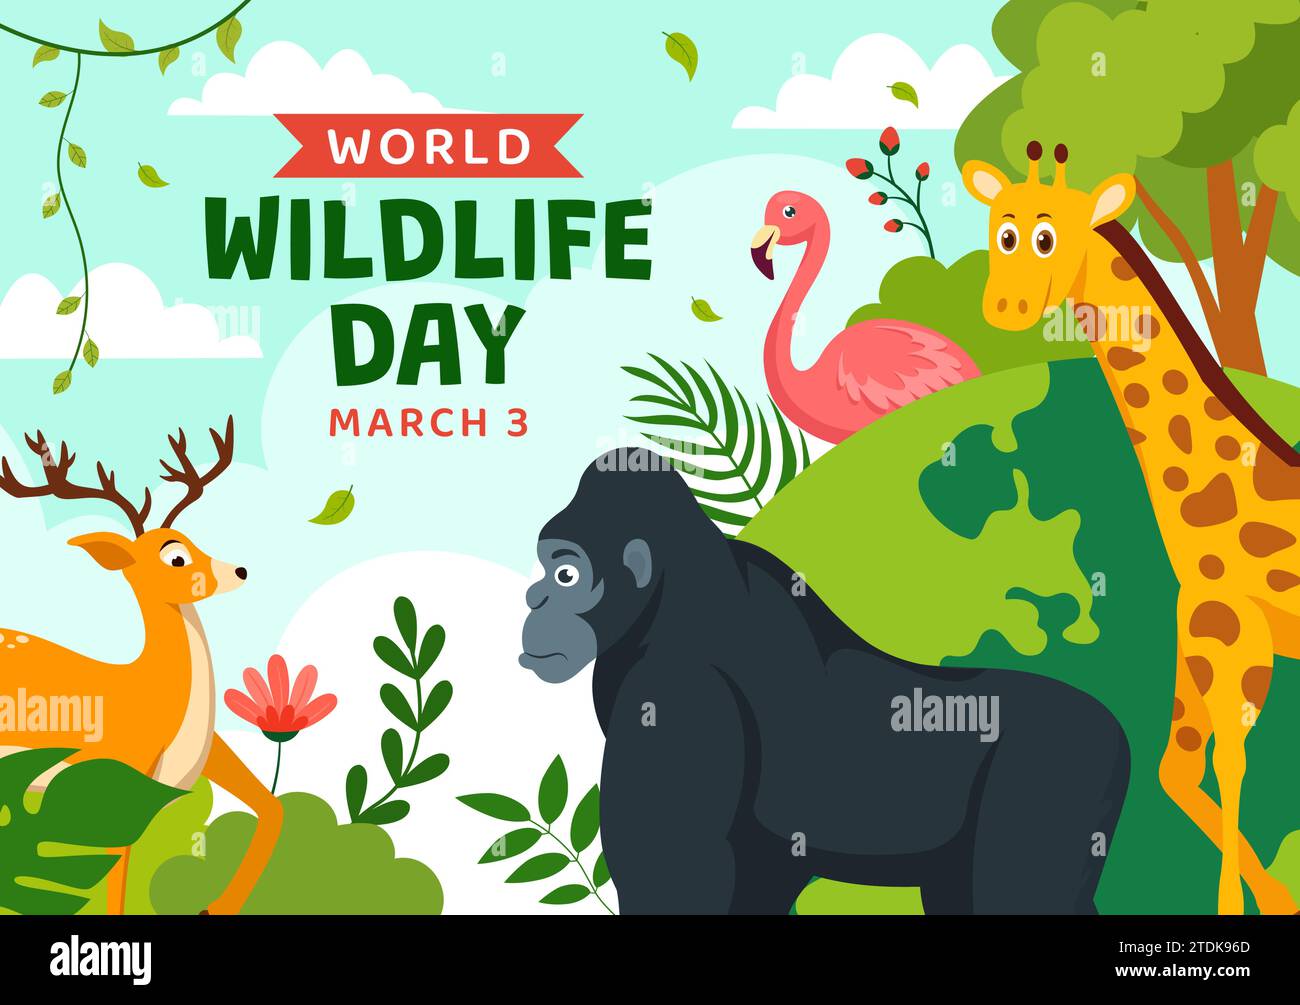 Ilustración vectorial del Día Mundial de la Vida Silvestre el 3 de marzo con varios animales a proteger a los animales y preservar su hábitat en el bosque en fondo plano Ilustración del Vector